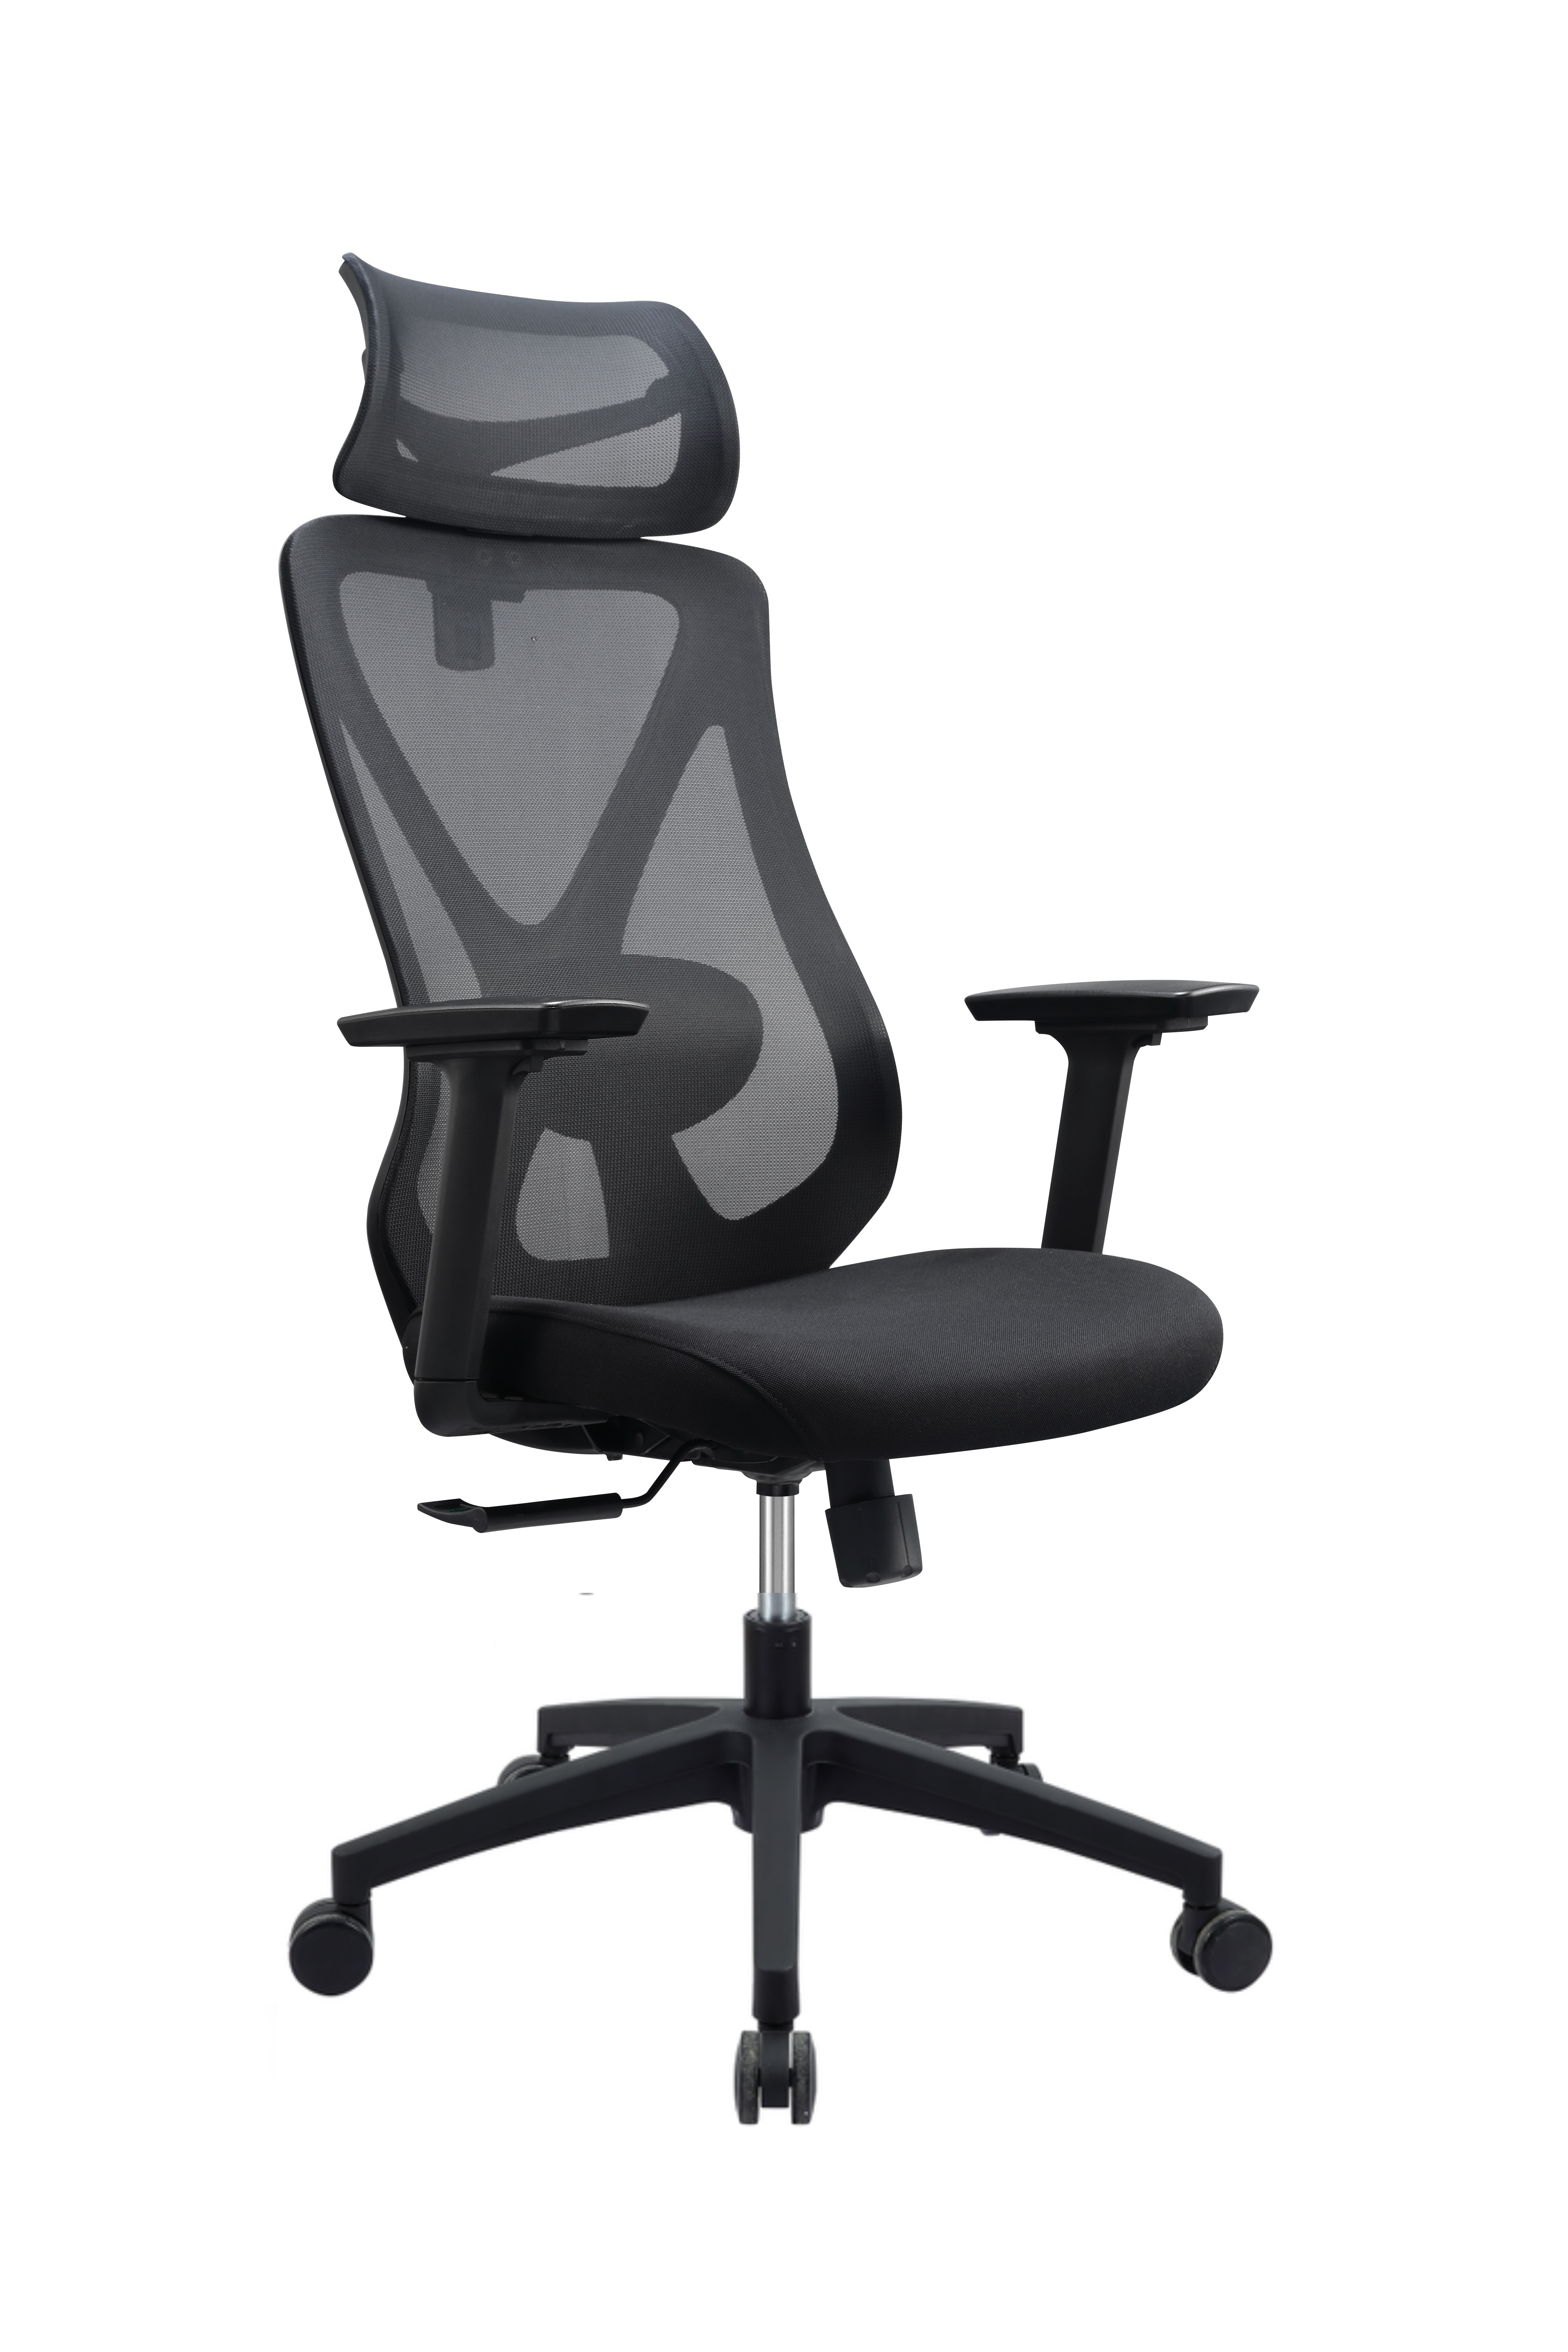 Newcity 629A 高品质办公家具高背人体工学网椅舒适现代设计师旋转网椅电脑网椅供应商佛山中国